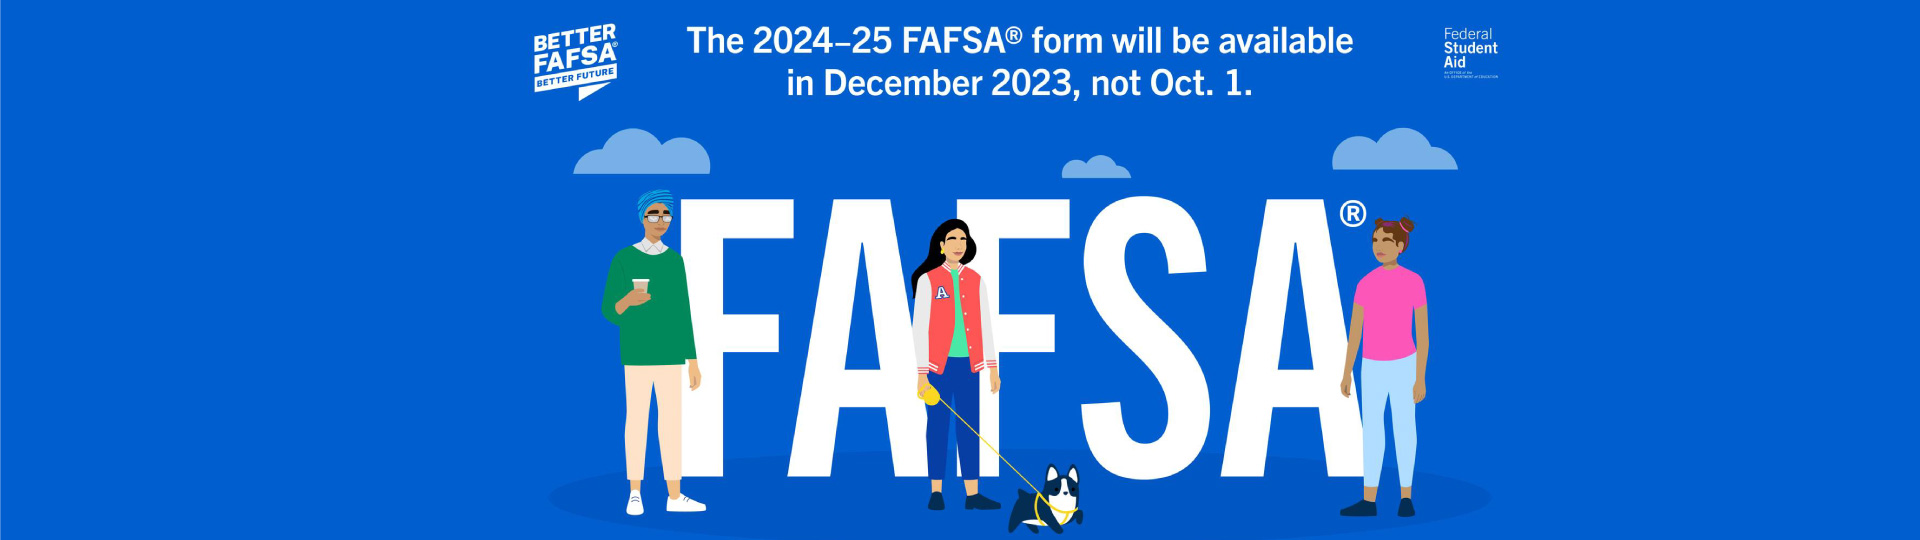 FAFSA 2024-25 opens December 1